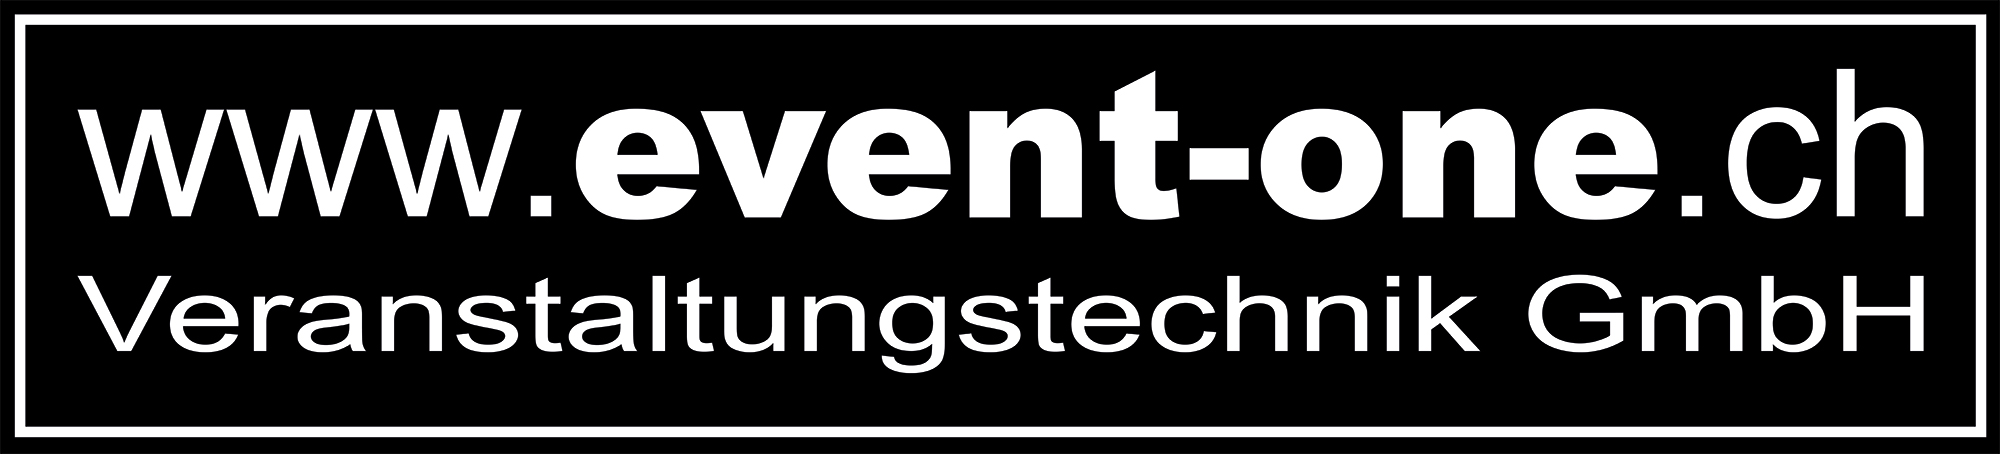 Event-One Veranstaltungstechnik GmbH